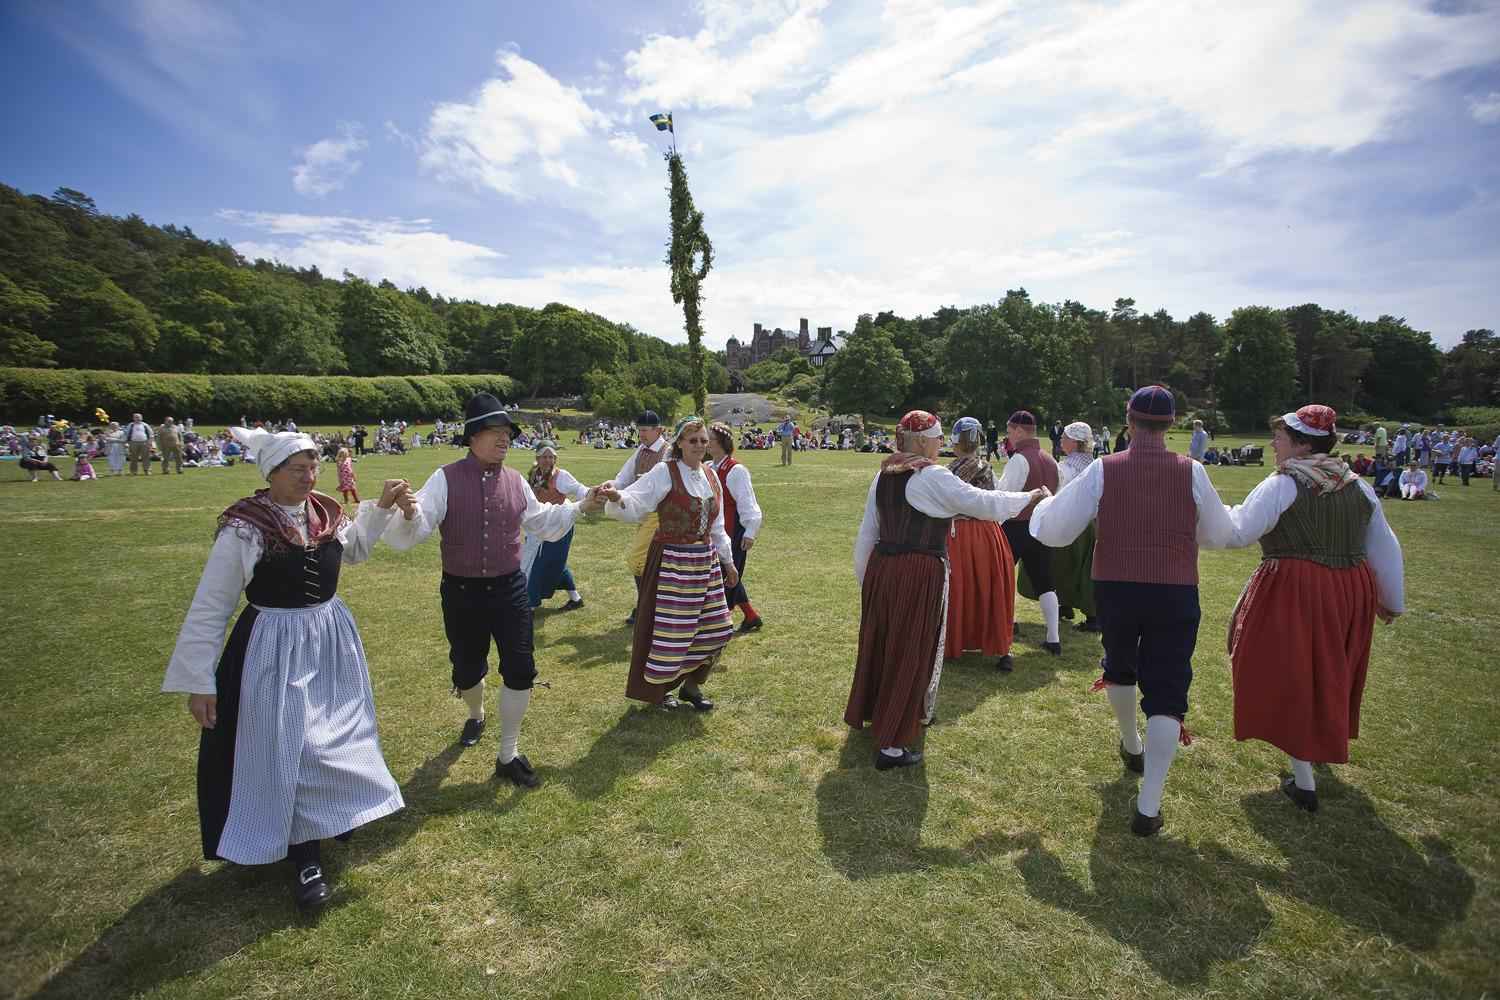 Menschen in traditioneller Kleidung tanzen um einen Maibaum während des Mittsommerfests auf dem Schloss Tjolöhölm in Halland